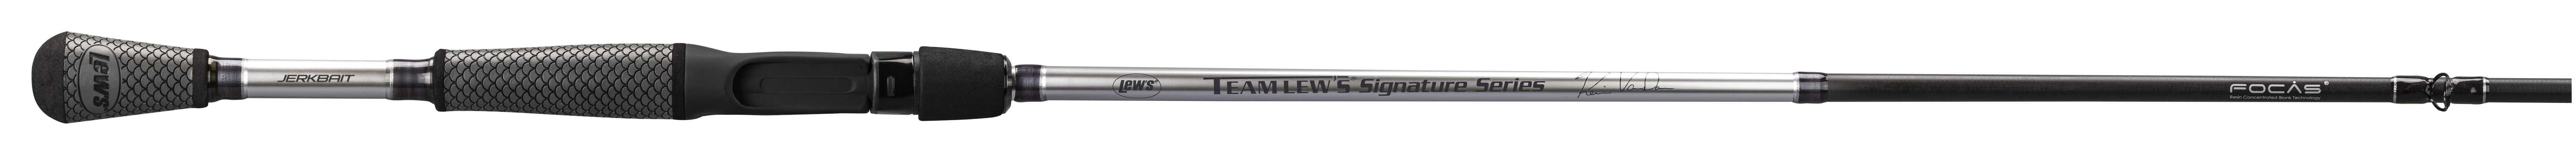 Team Lew's Signature Series KVD Casting Rods